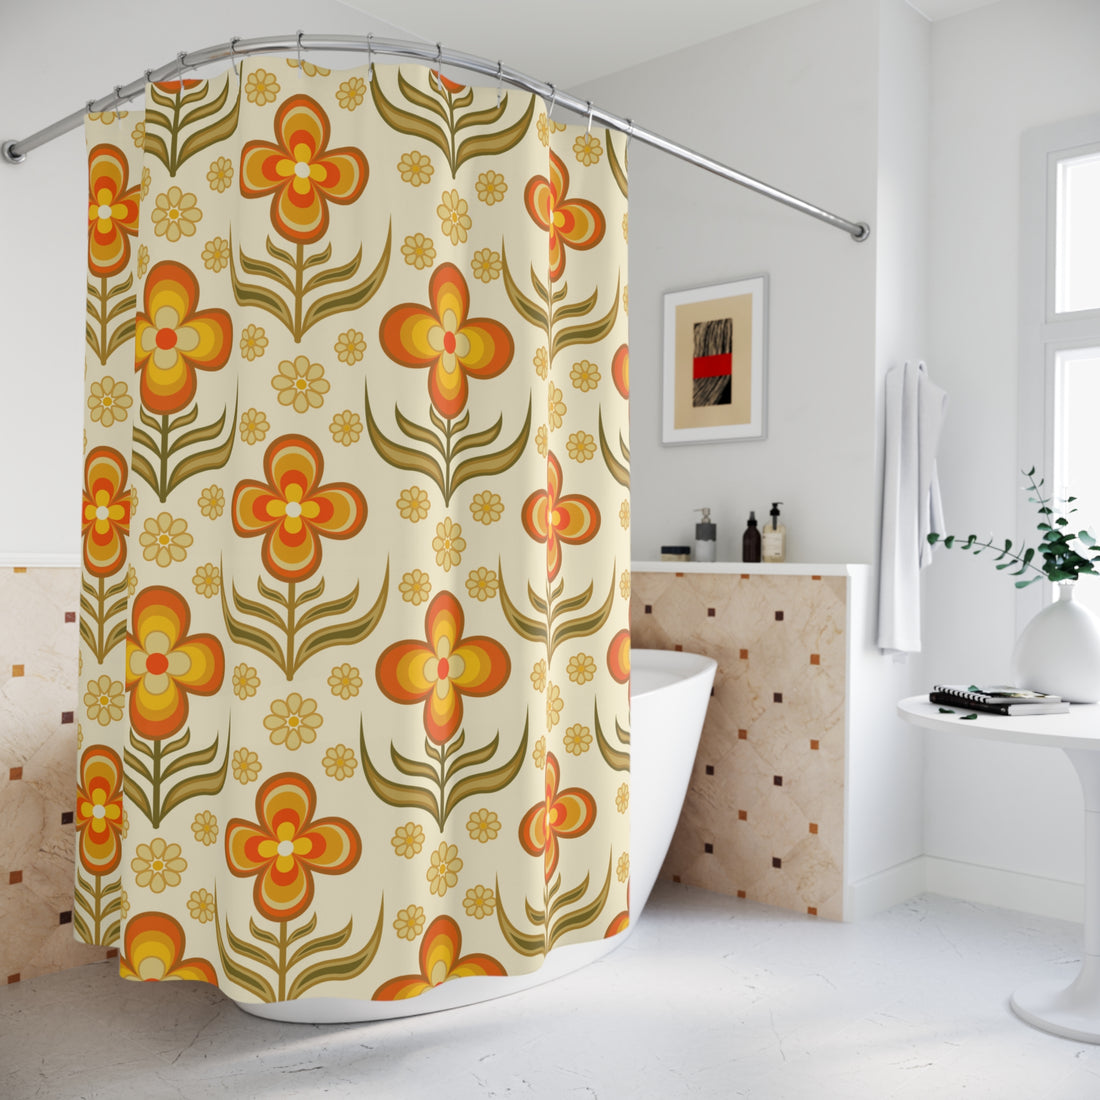 1970s Print Shower Curtain, Flower Power Groovy Retro Bath Decor